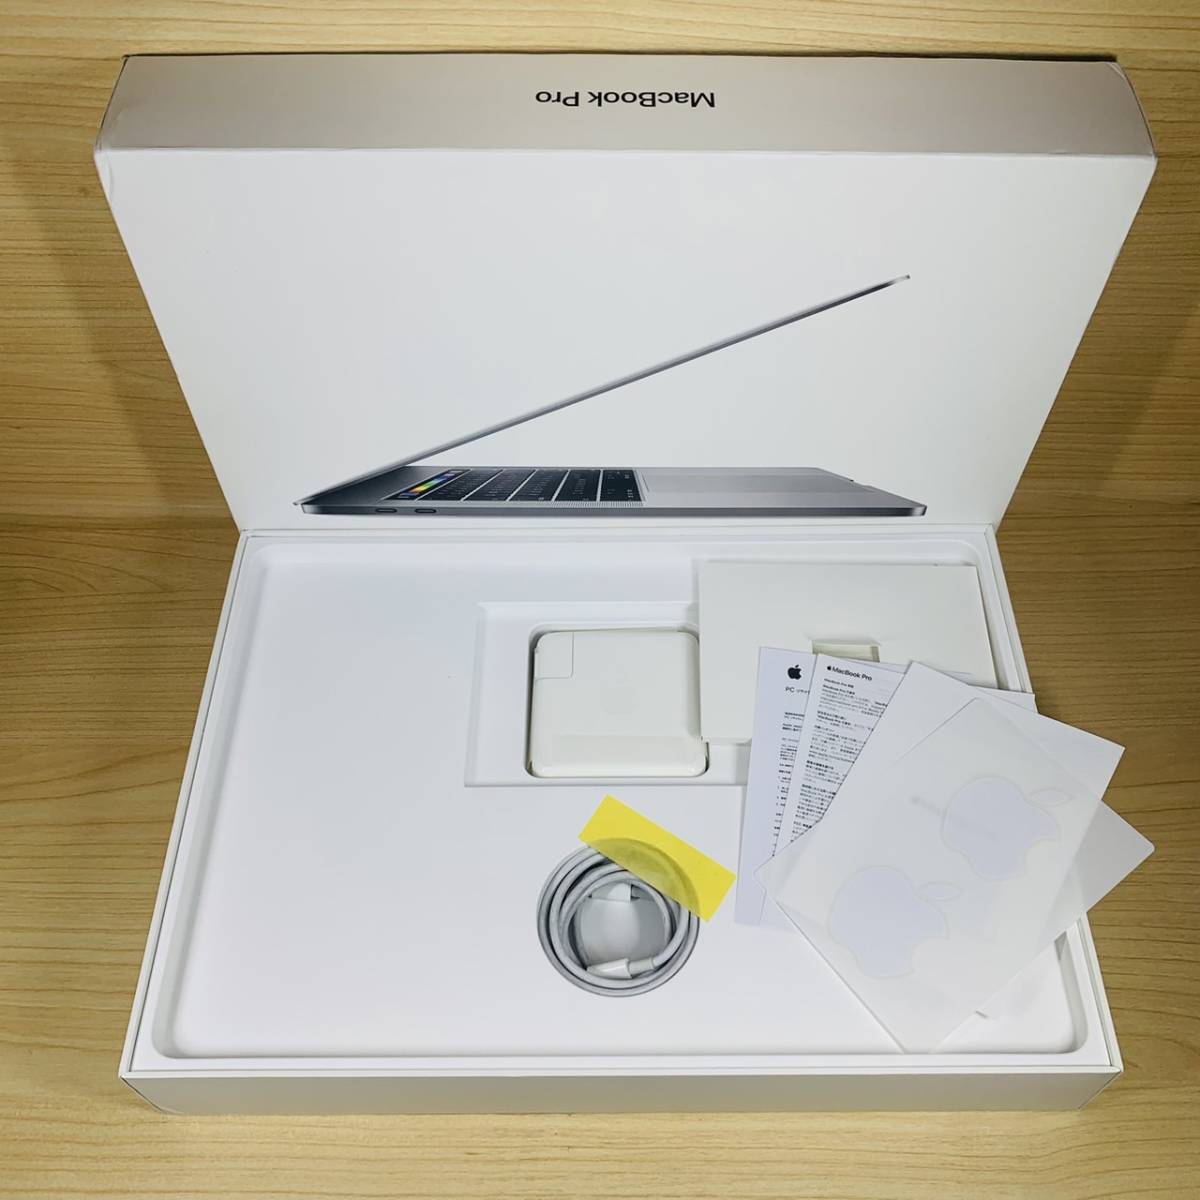 オンラインショップ A1707 15-inch Pro MacBook Apple [P174